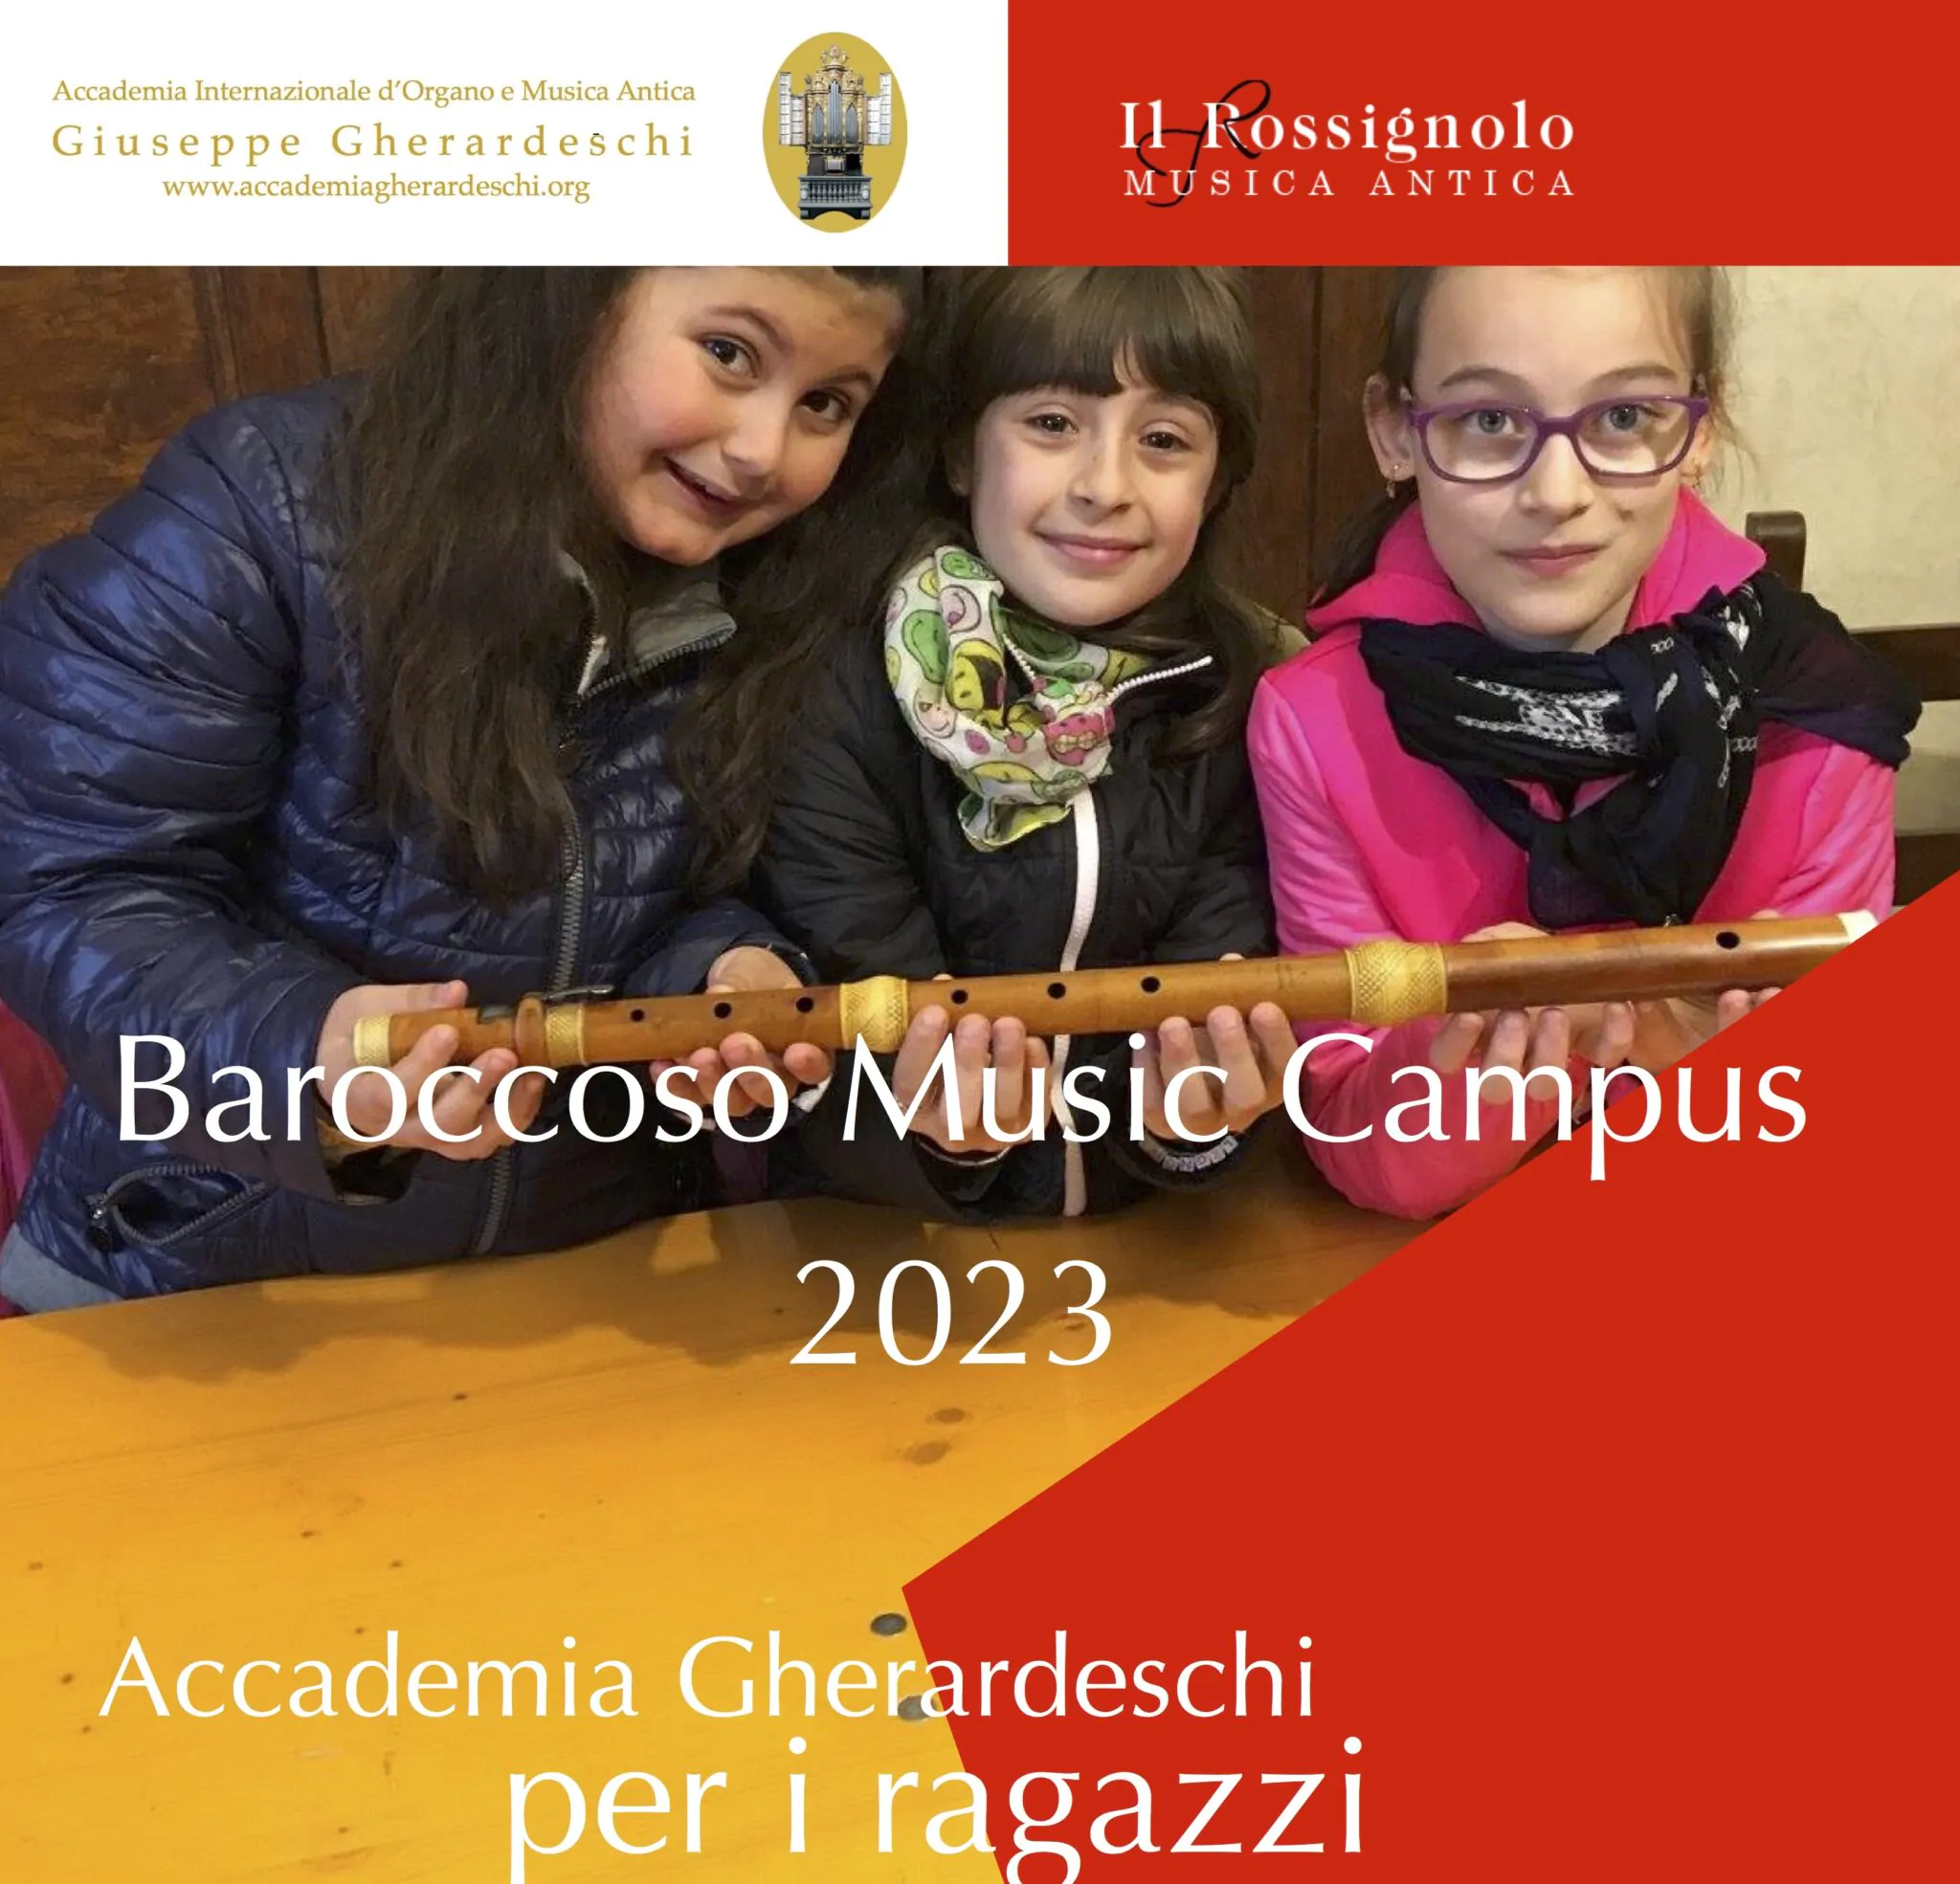 Copia-di-Baroccoso-Music-Campus-2023-immagine-1-2048x1969.jpg